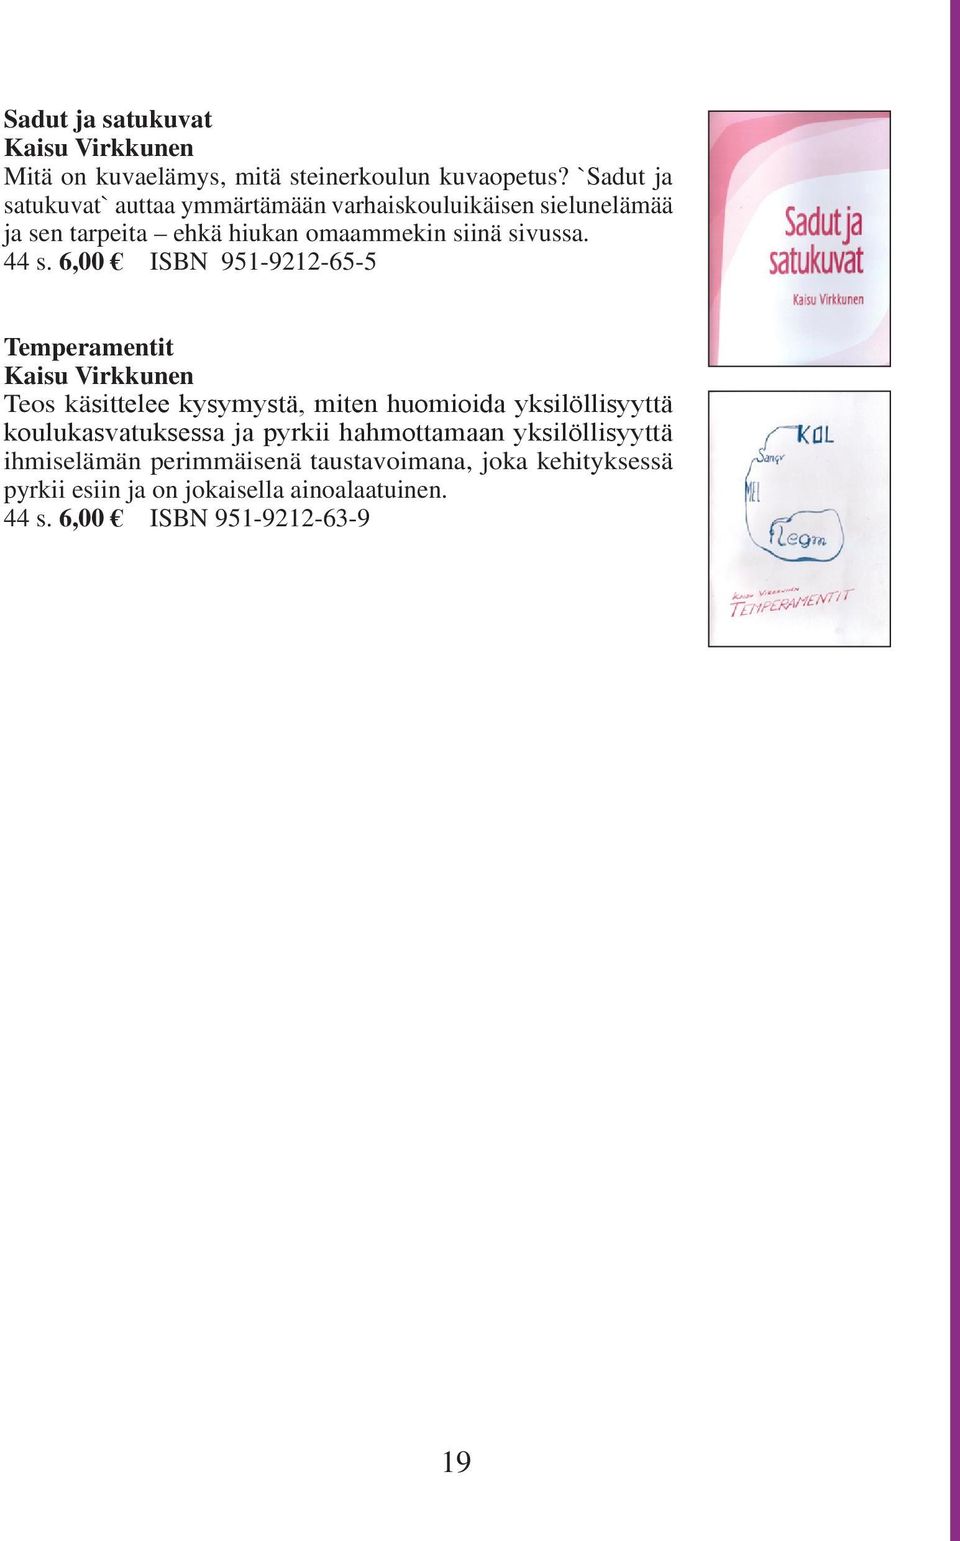 6,00 ISBN 951-9212-65-5 Temperamentit Kaisu Virkkunen Teos käsittelee kysymystä, miten huomioida yksilöllisyyttä koulukasvatuksessa